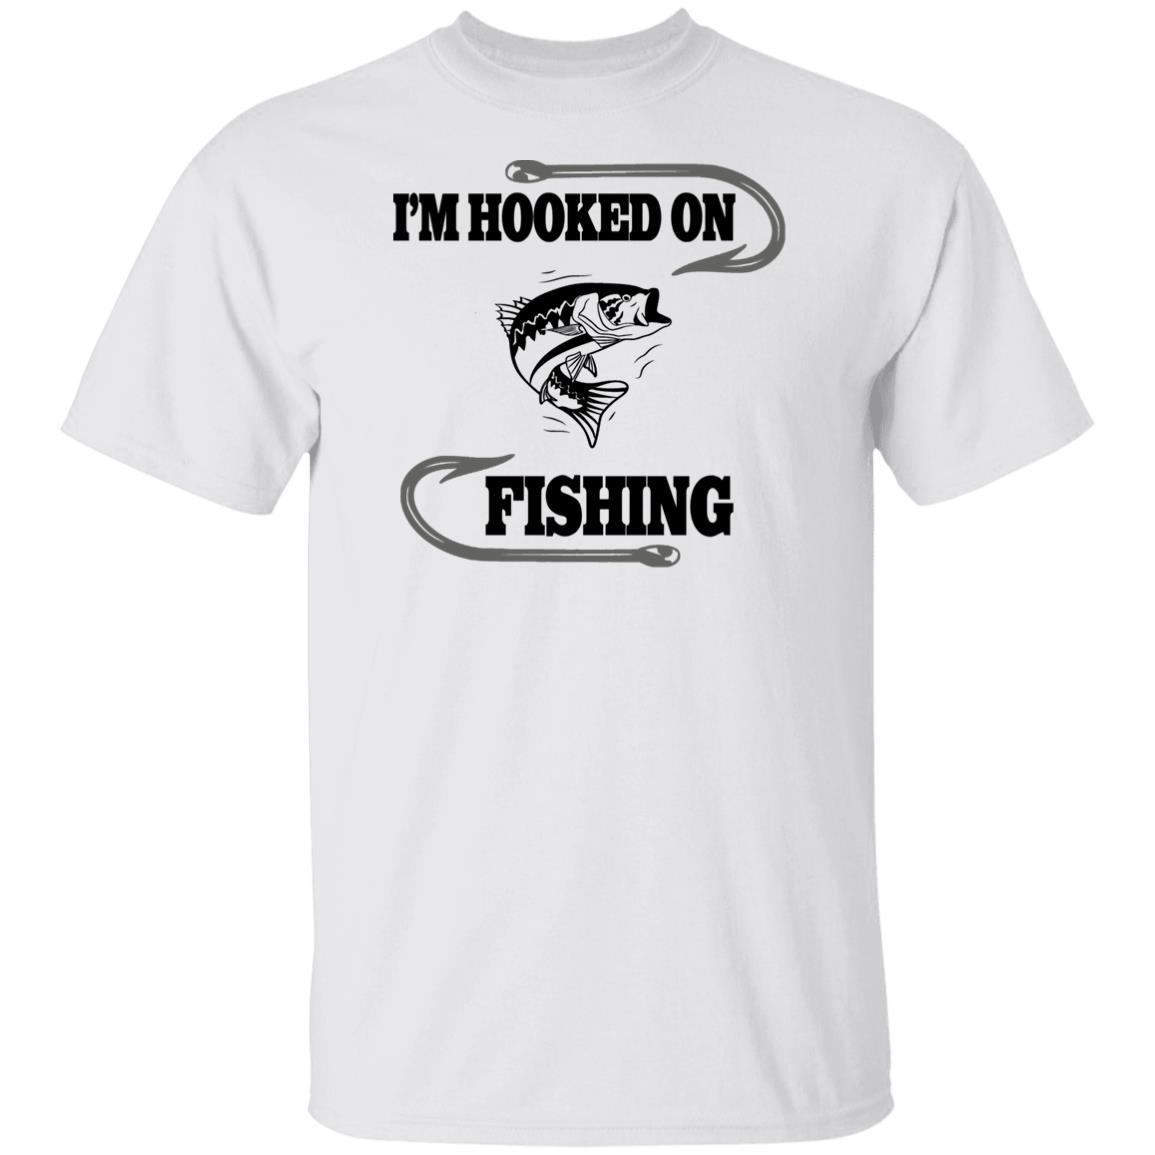 I'm hooked on fishing t shirt b white